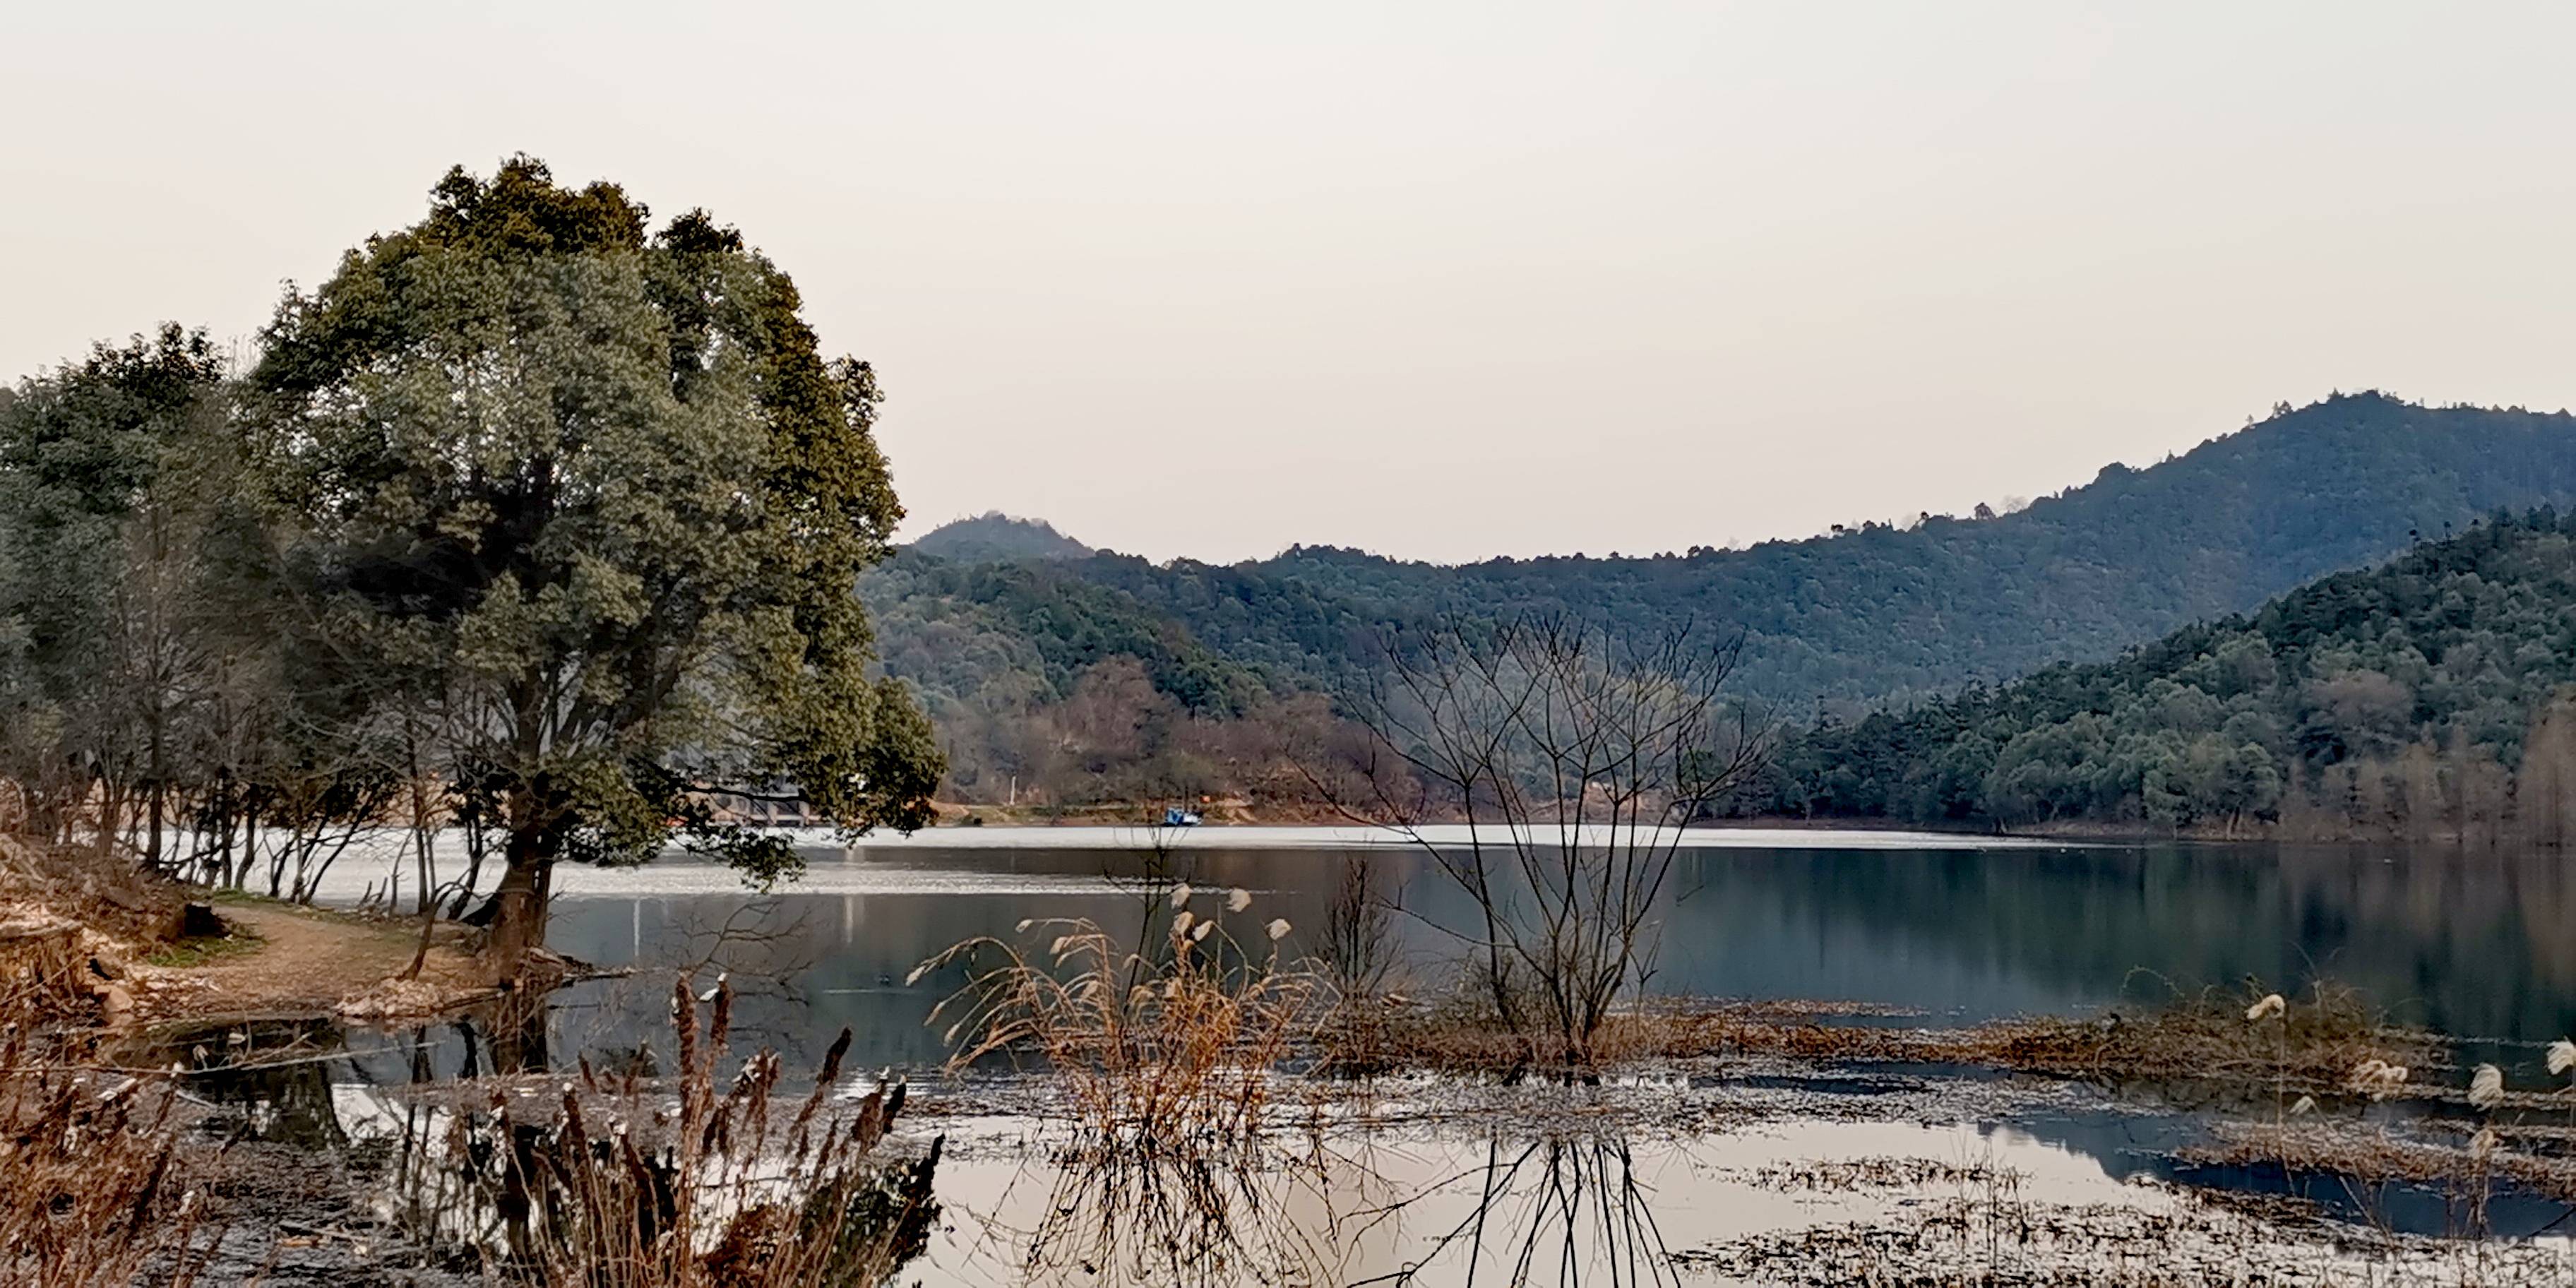 长沙梅溪湖区域新增一处森林公园:象鼻窝森林公园